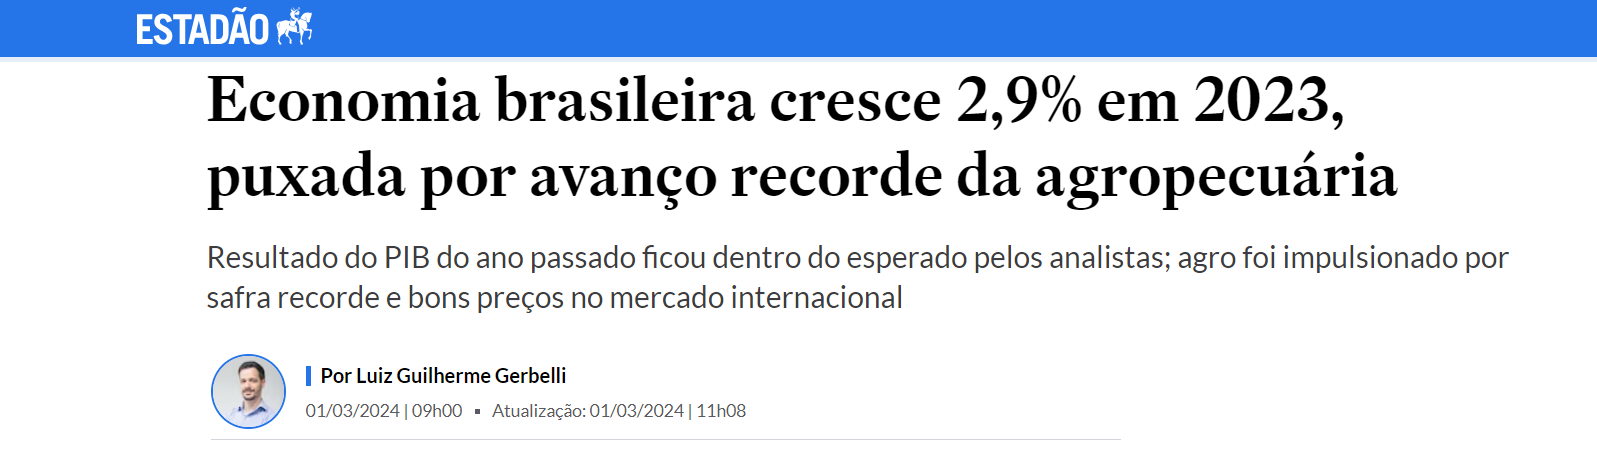 Economia brasileira cresce 2,9% em 2023, puxada por avanço recorde da agropecuária - Estadão